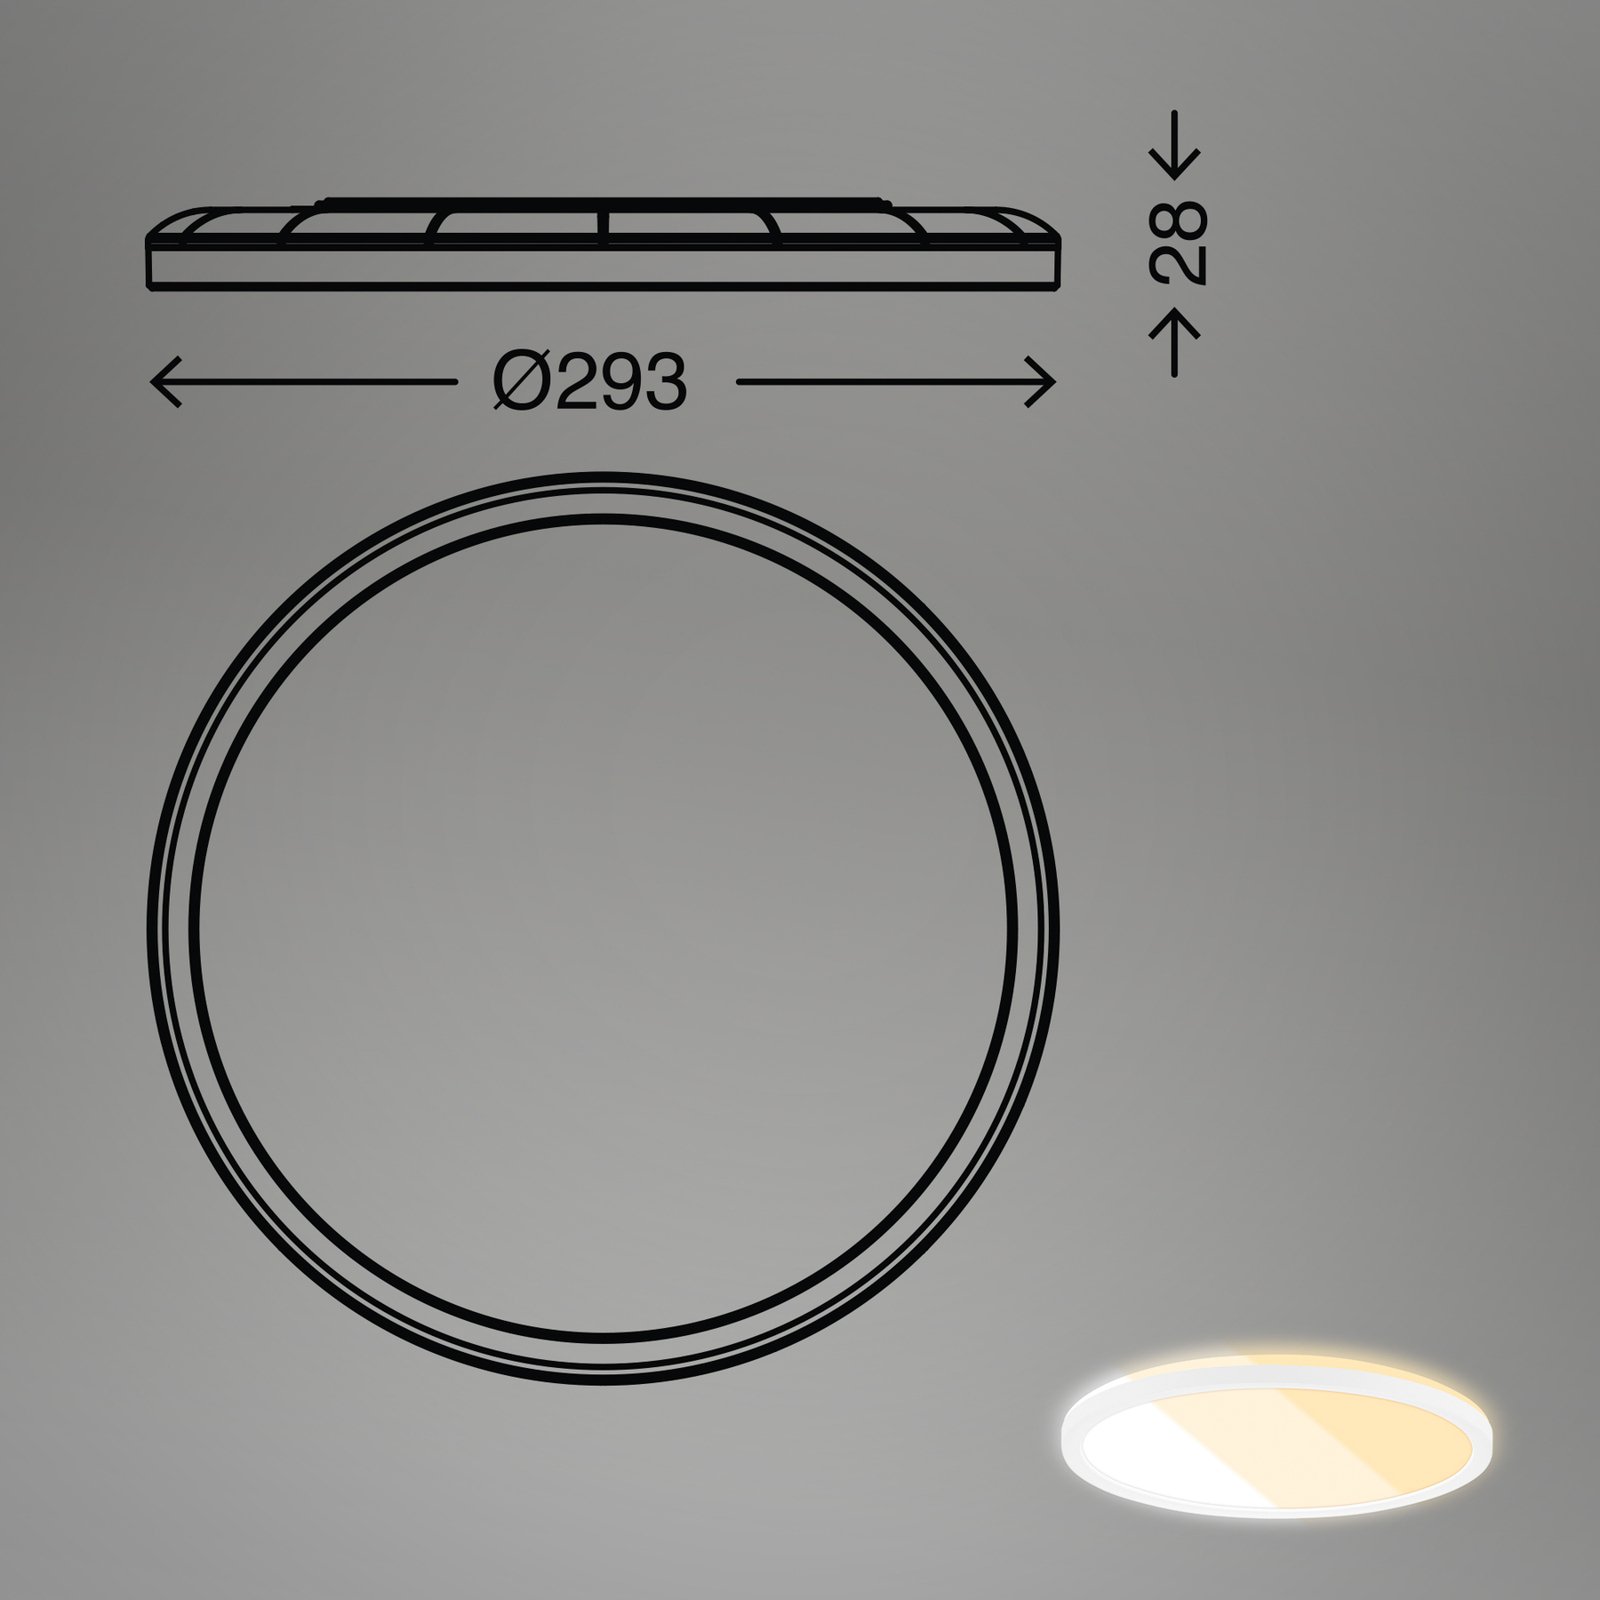 LED-paneel 7555 Valgustusvärv reguleeritav, Ø 29,3 cm